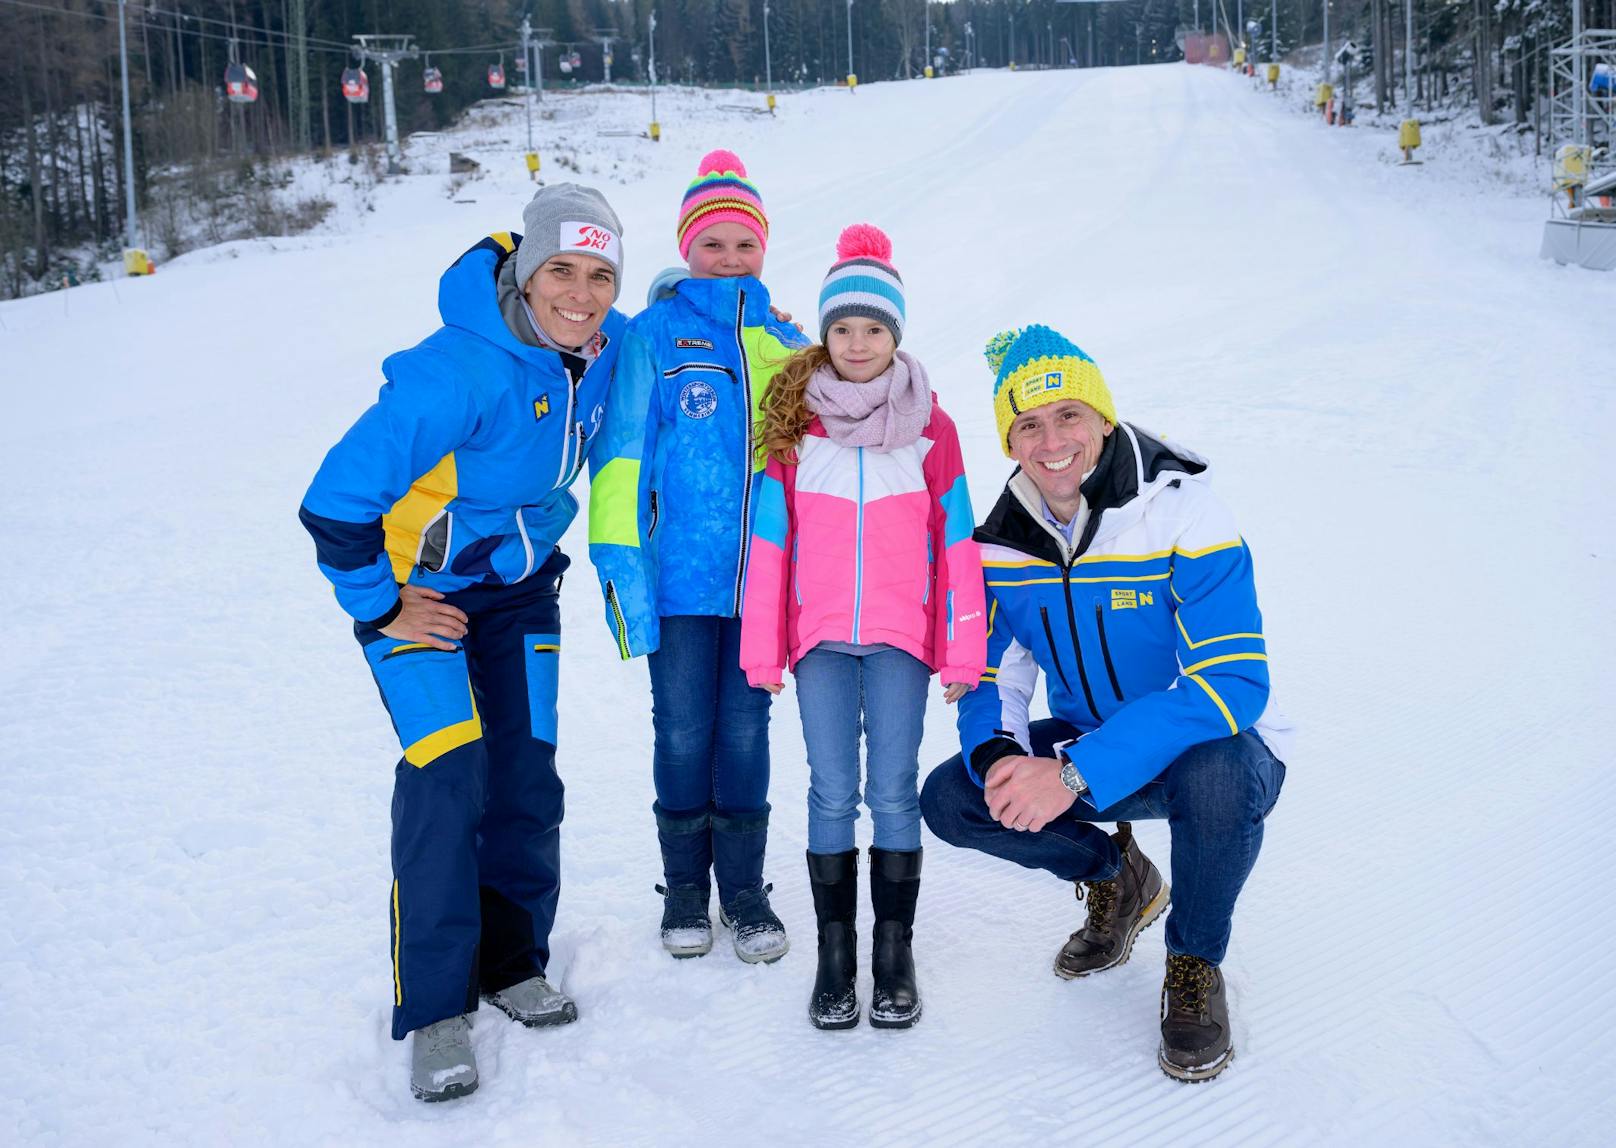 1.000 Kinder beim ersten "Kids Day" auf der Skipiste